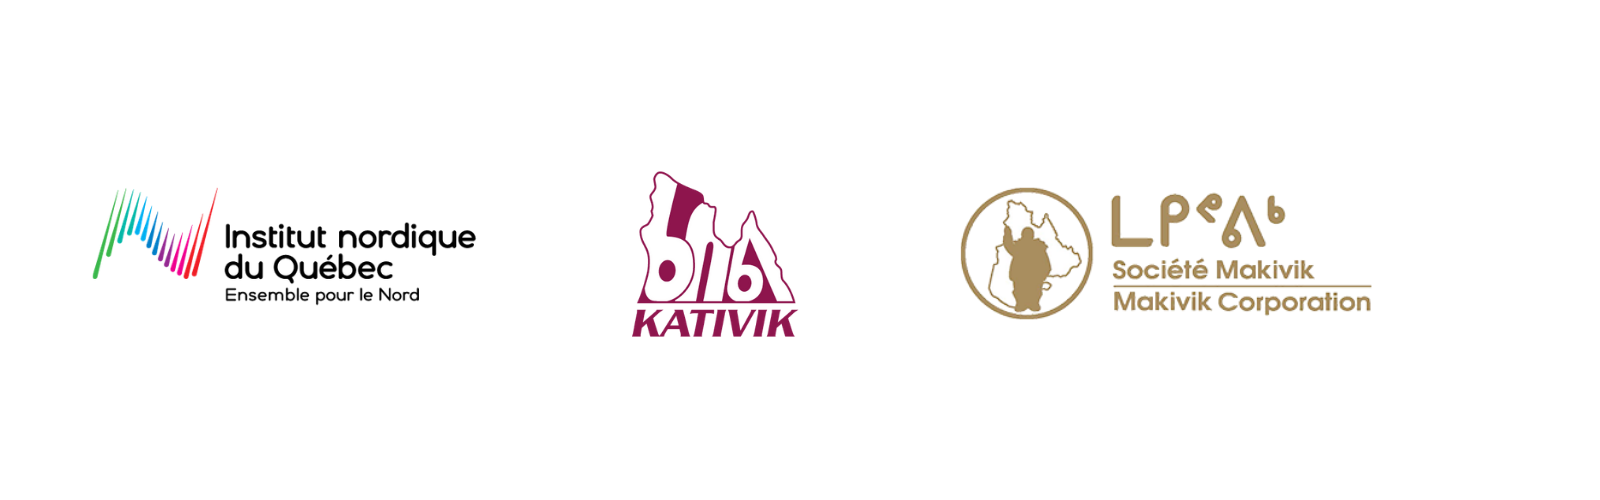 logo-inq-krg-makivik